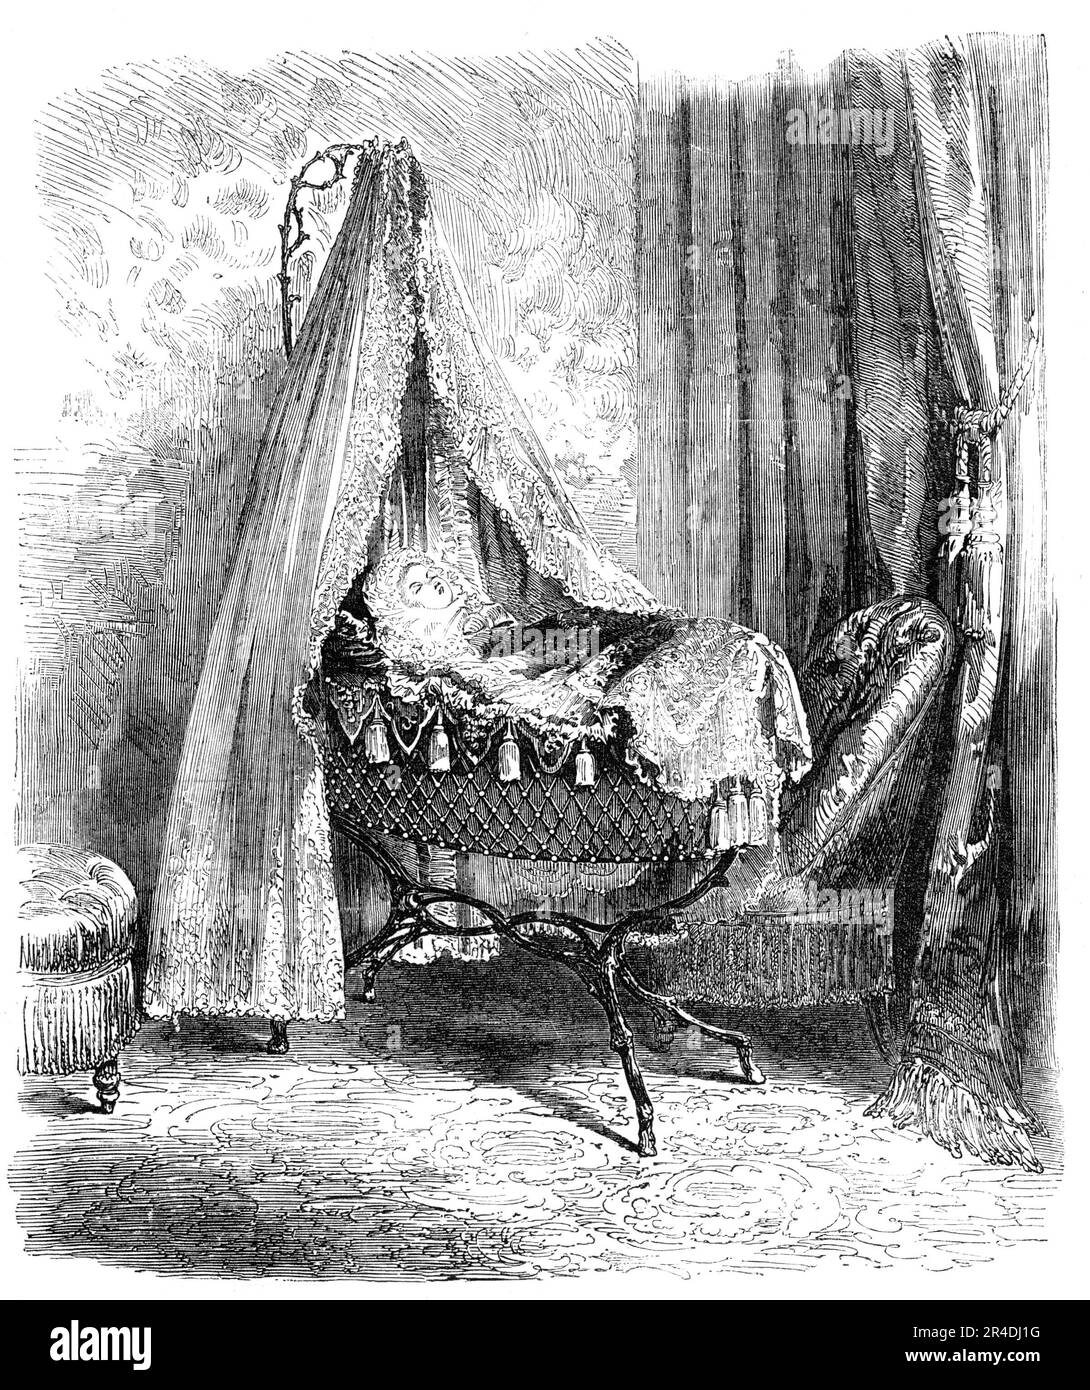 Der kaiserliche Prinz in seiner Wiege - von einem Foto, das 1856 in den Tuilerien von M. Richebourg gemacht wurde. Prinz Louis Napoleon schläft im Tuilerien-Palast, Paris. Aus "Illustrierte London News", 1856. Stockfoto